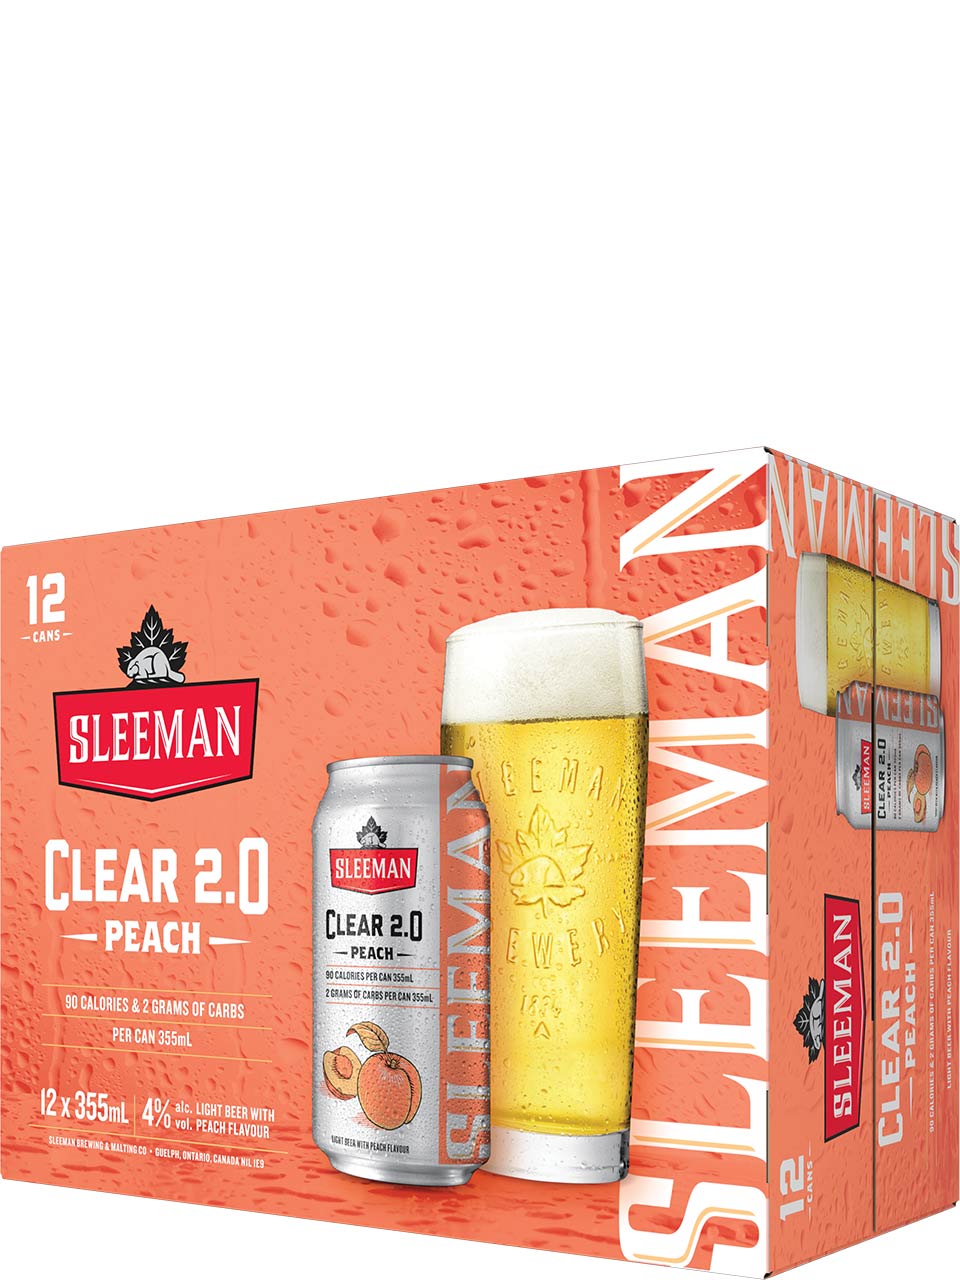 Sleeman Clear 2.0 Peach 12 Pack Cans